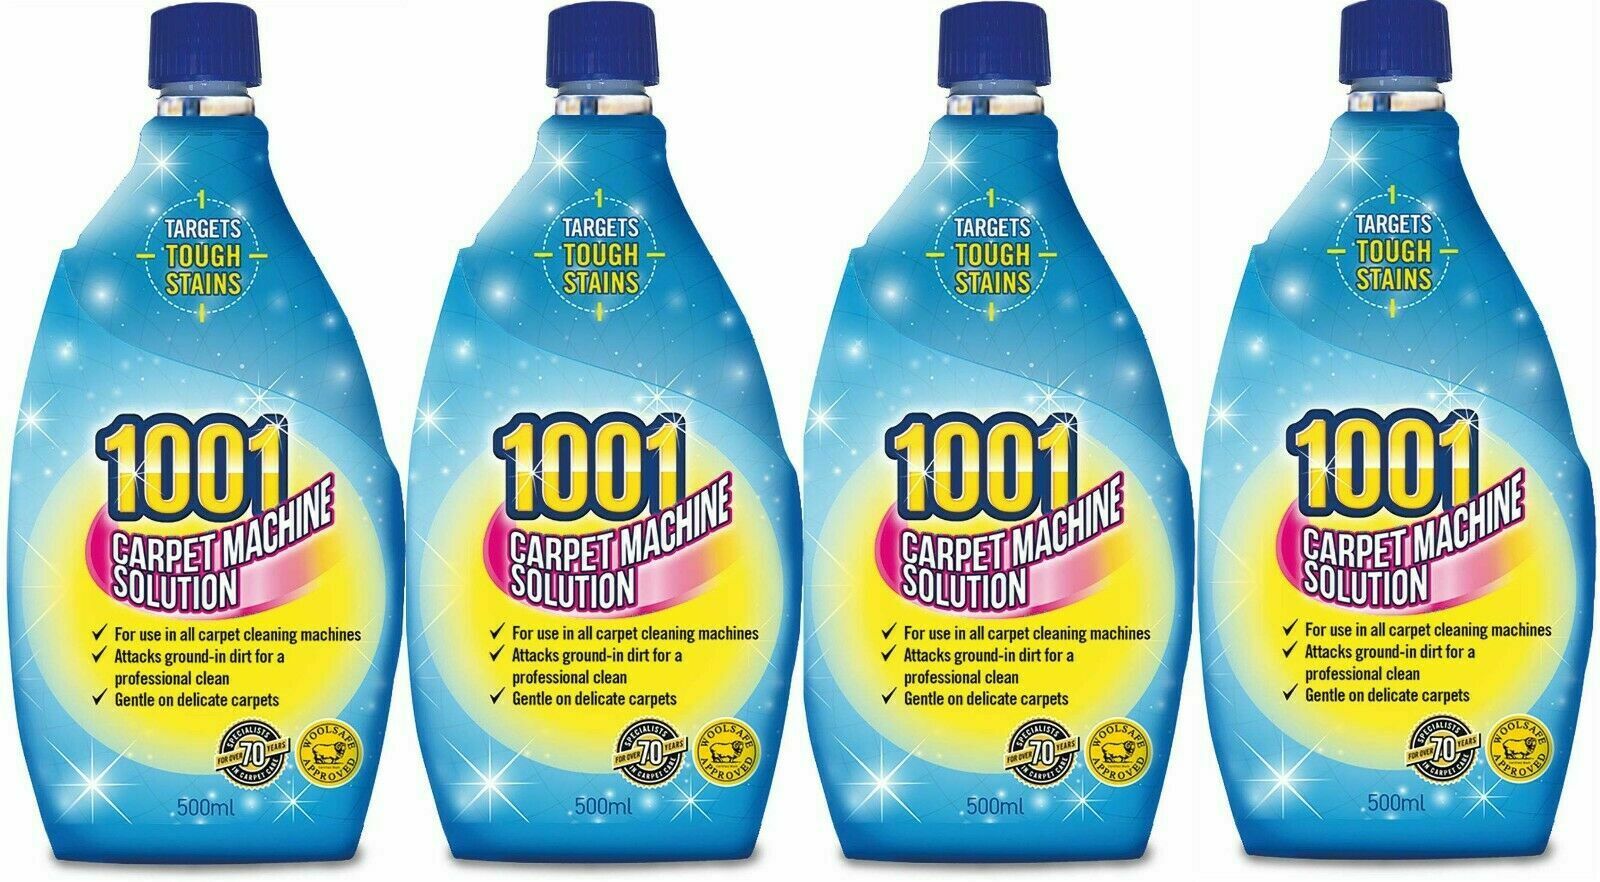 4-1001-Carpet-Shampoo-For-3-in-1-Machines-500ml-each